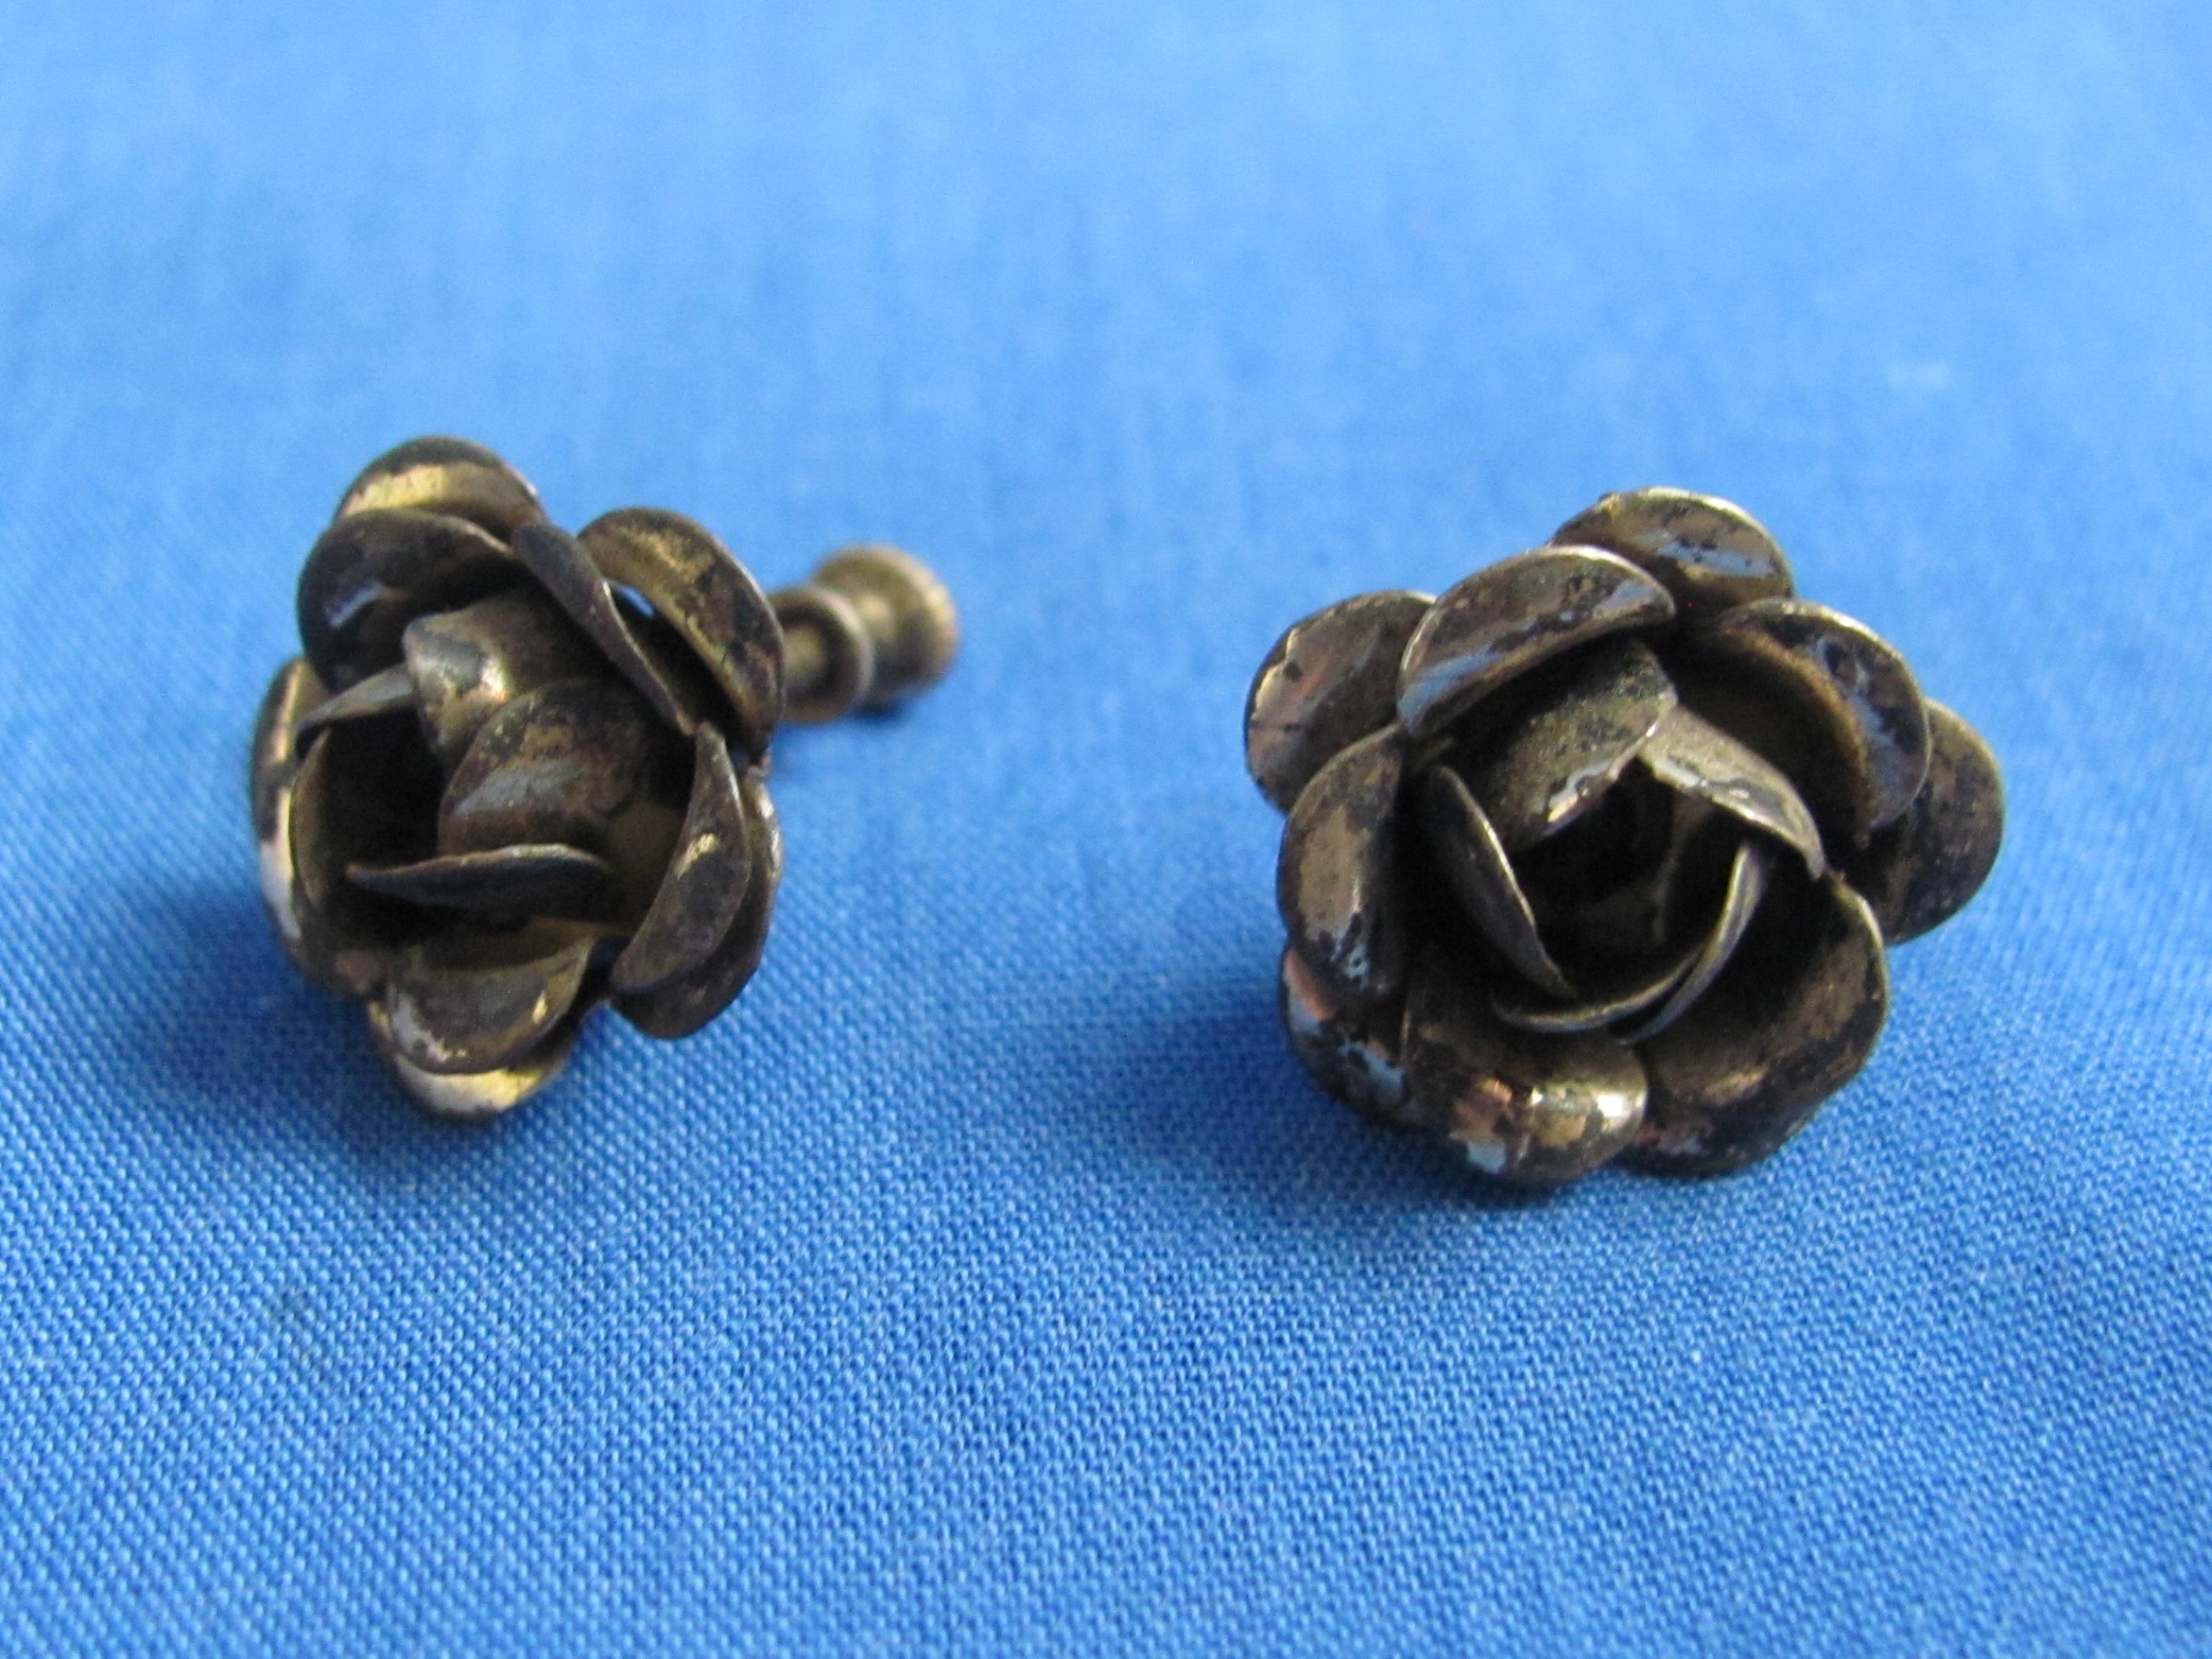 3 Pairs of Vintage Sterling Silver Screw-on Earrings” Crowns, Roses & Flower – 26.6 grams